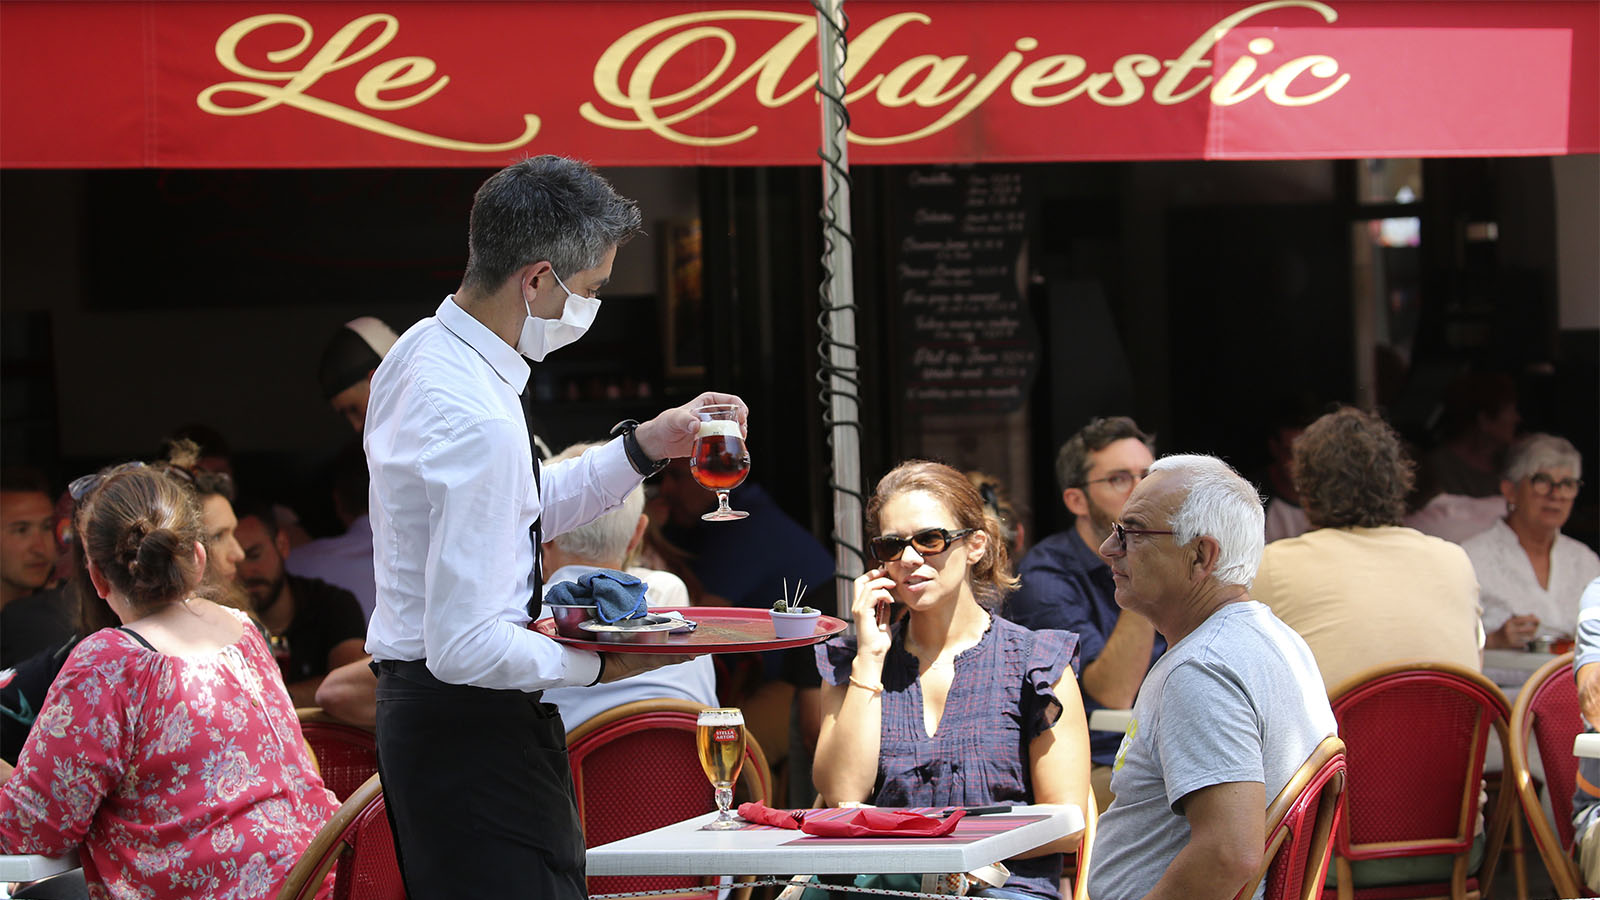 מלצר מביא משקאות לשולחן ללקוחות בבית הקפה בסן ז'אן דה לוז שבדרום מערב צרפת (AP Photo/Bob Edme)